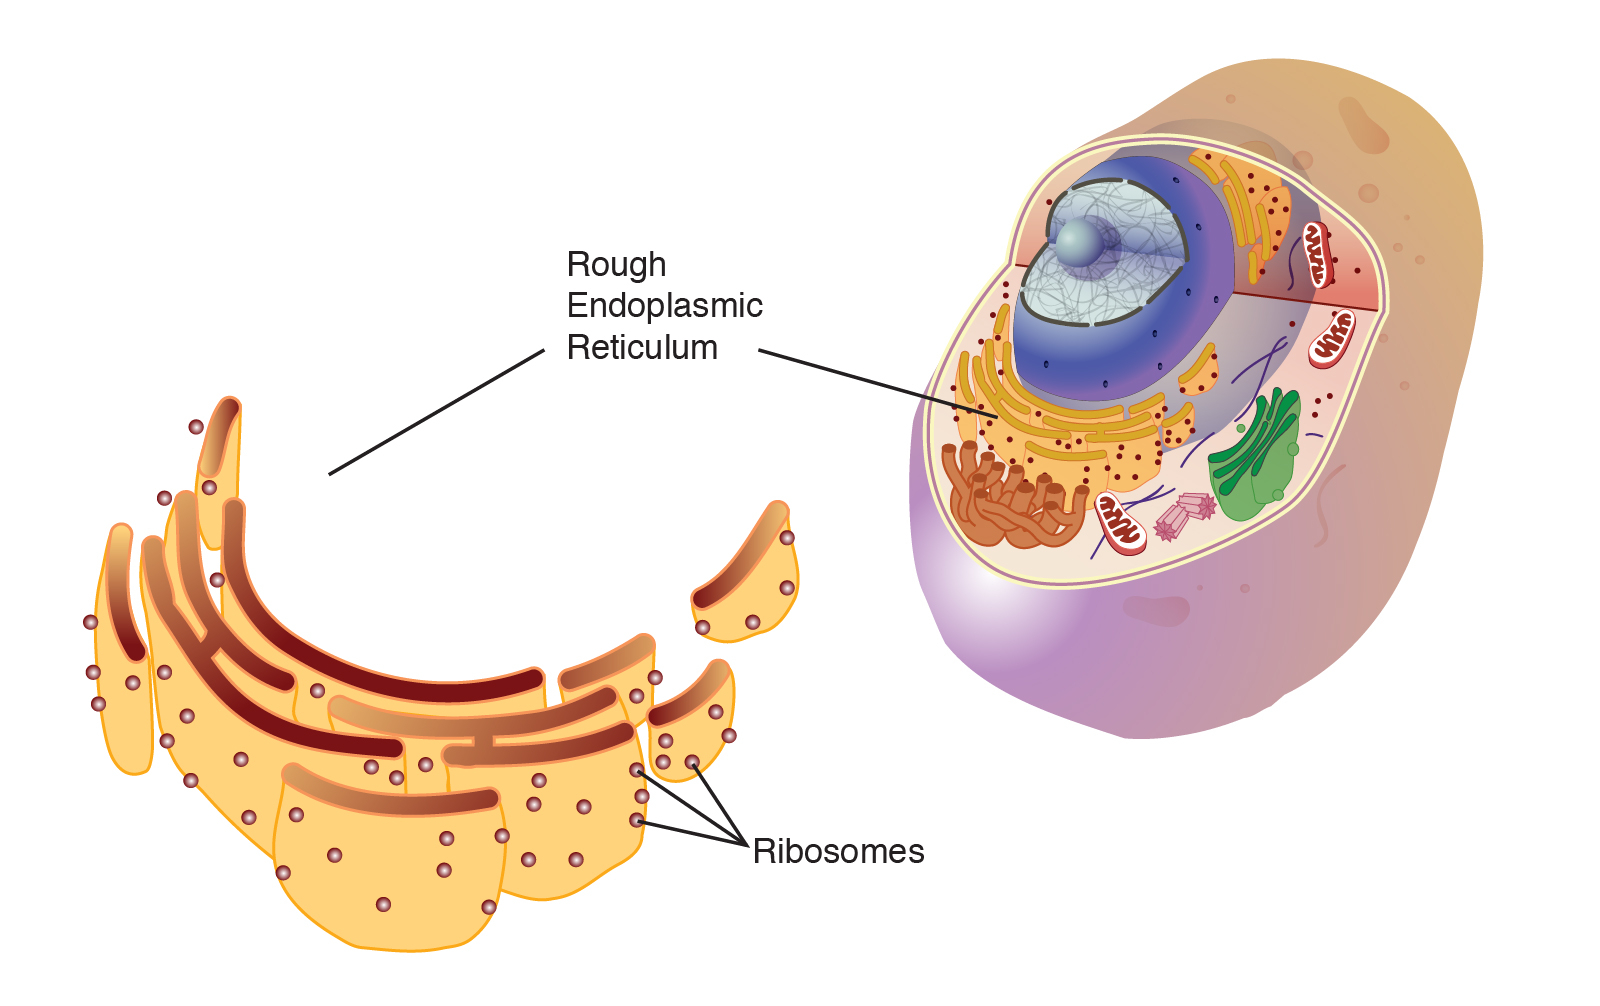 Endoplasmic Reticulum (Rough)